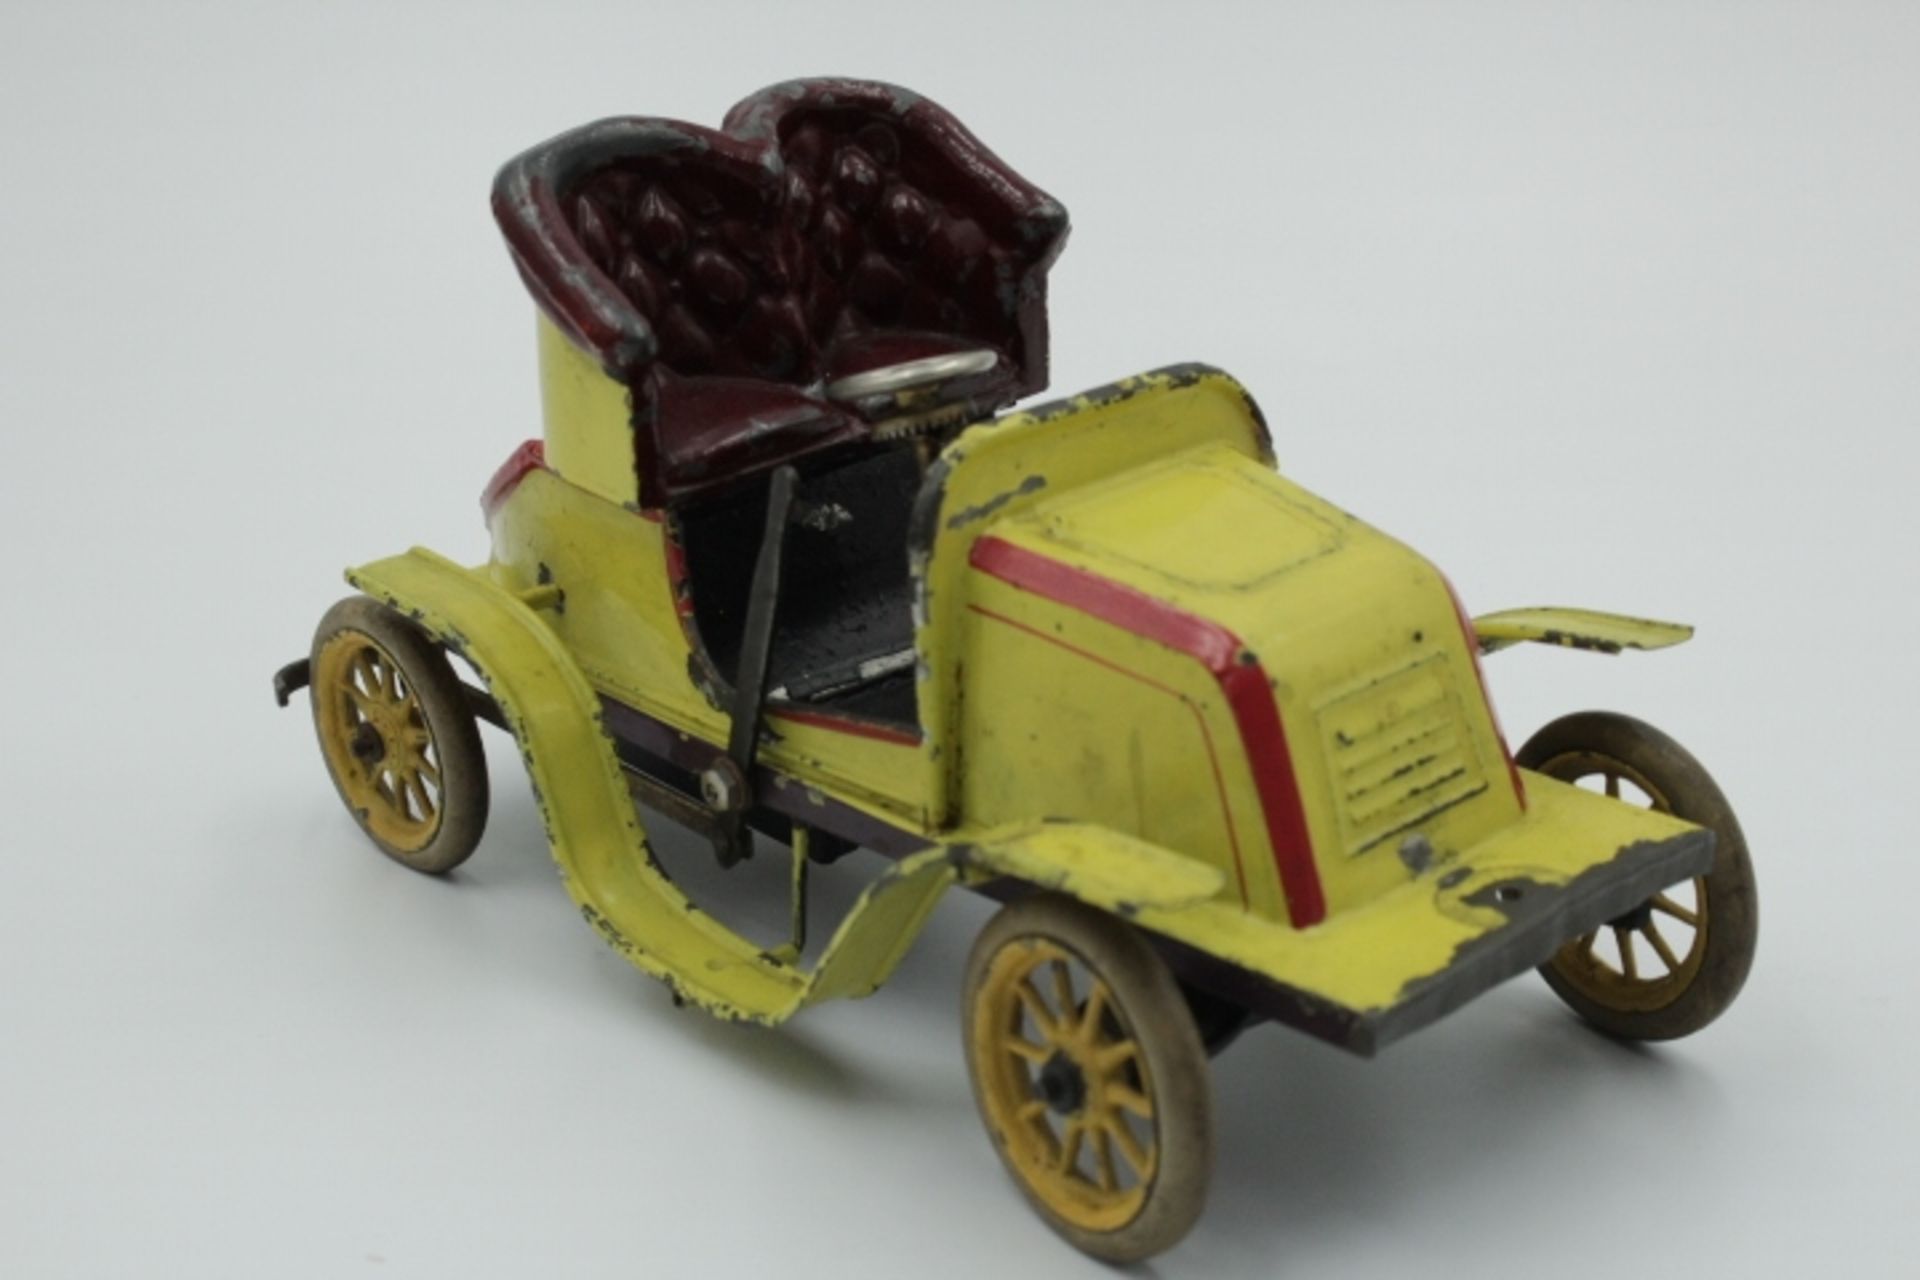 Bing Uralt Auto Blech Farbig gefasst wohl um 1910 Federwerk nicht geprüft,Gummibereifung bespielter - Image 2 of 3